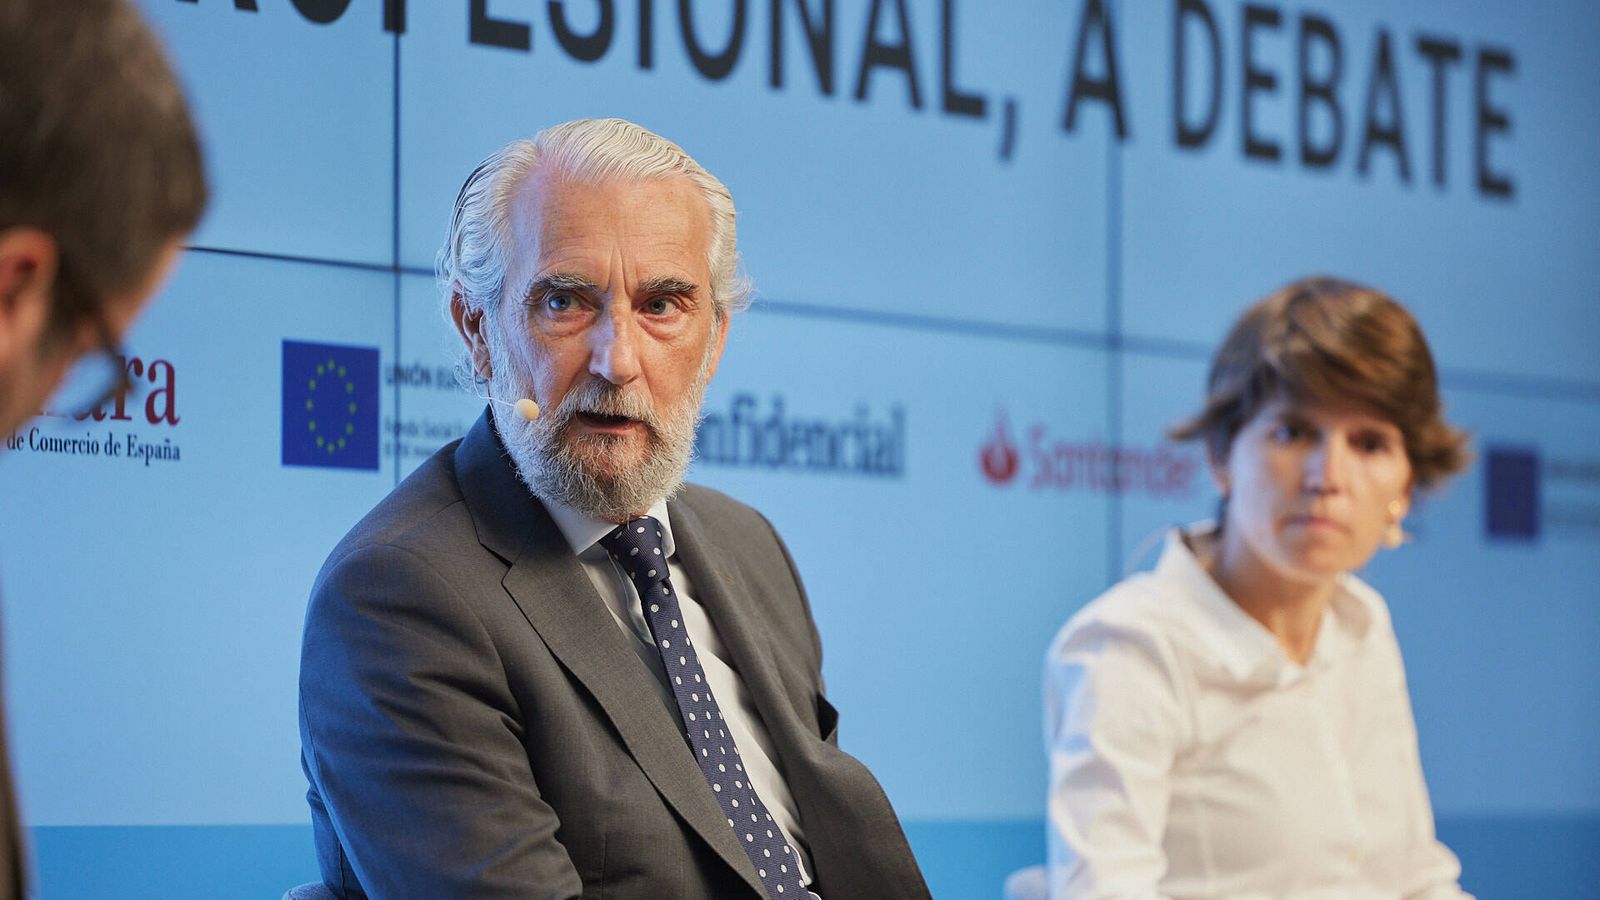 Luis Martínez-Abarca (CEU) y Verónica Marco (ALSA), en la mesa redonda 'Perspectivas profesionales, desafíos y futuro de la formación'.